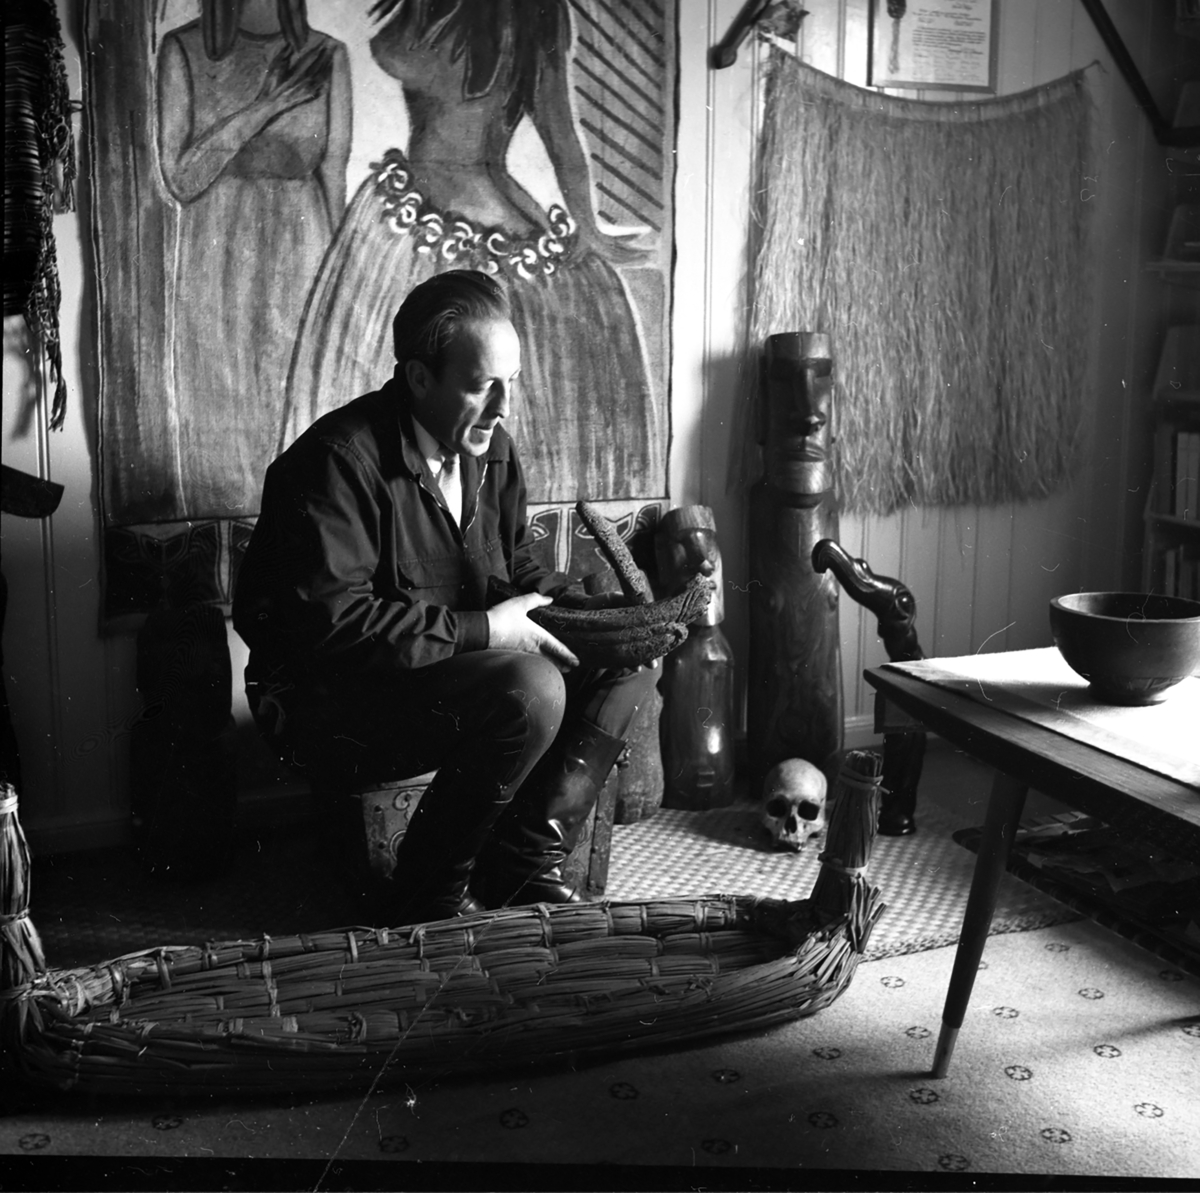 Arkeolog Arne Skjølsvold.
Styret i det nystiftete Norsk Skogbruksmuseet i 1955 ansatte Arne Skjølsvold som institusjonens første konservator og eneste ansatte.